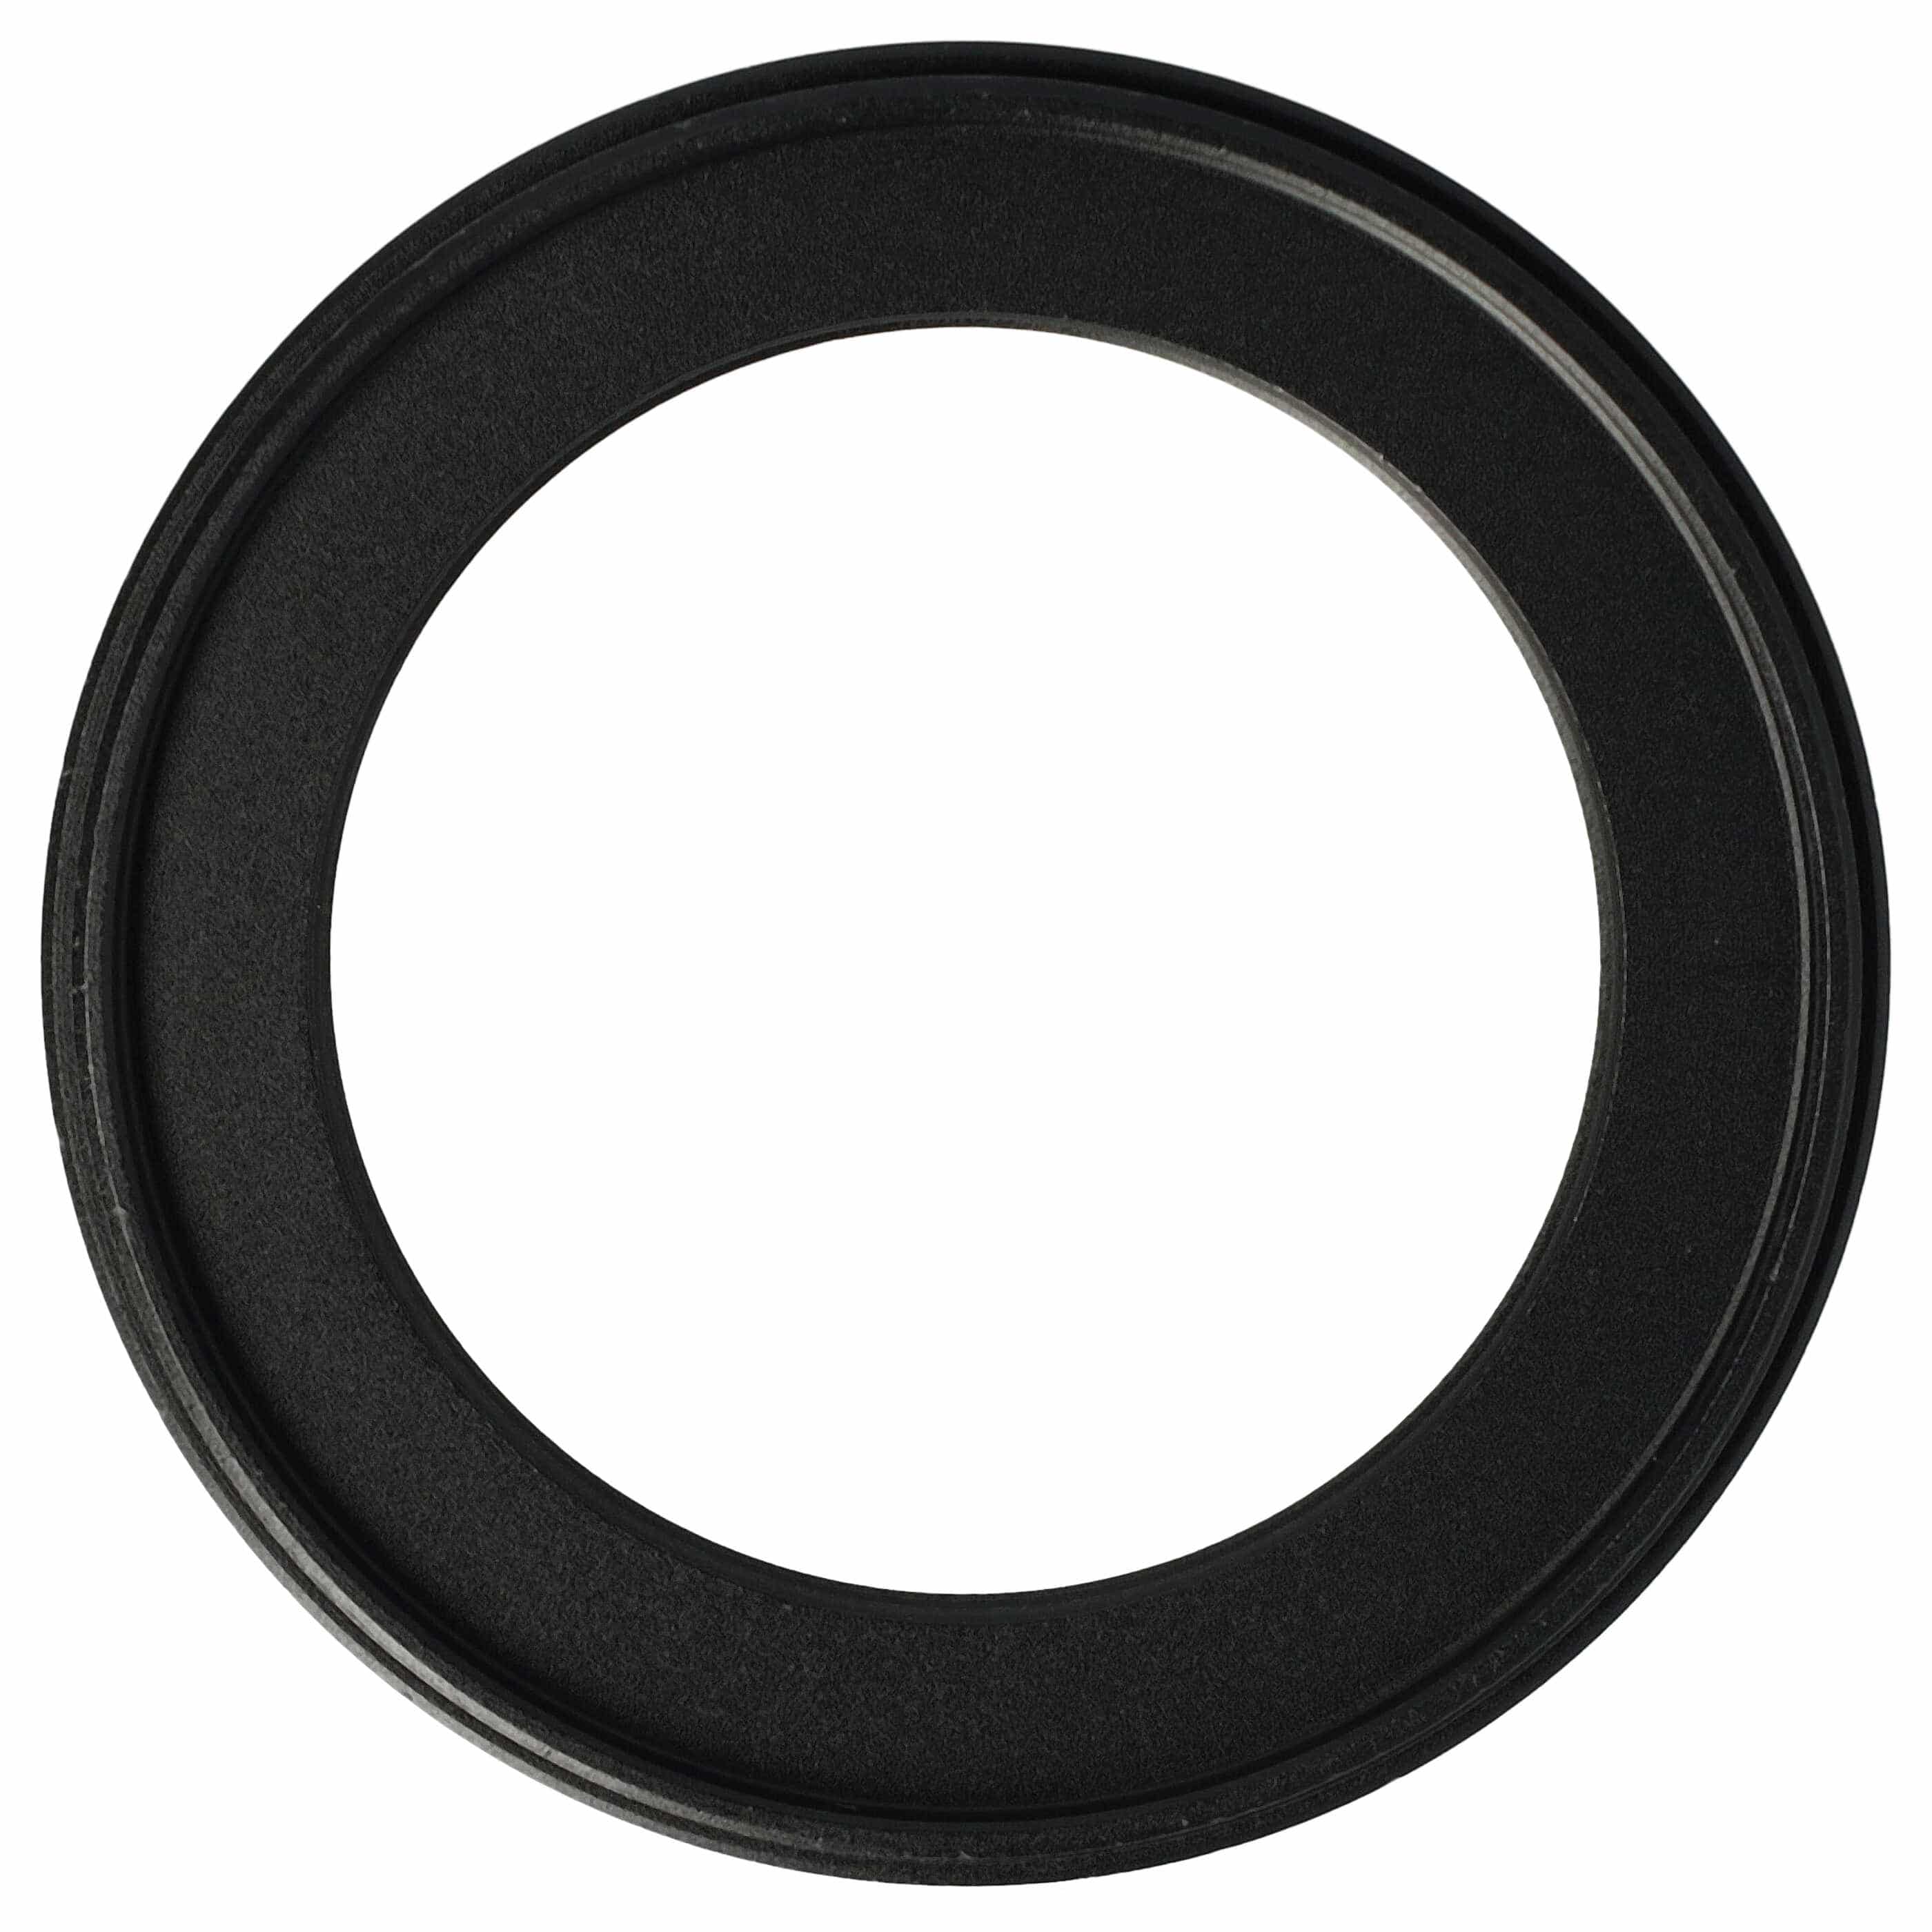 Anello adattatore step-down da 58 mm a 42 mm per obiettivo fotocamera - Adattatore filtro, metallo, nero